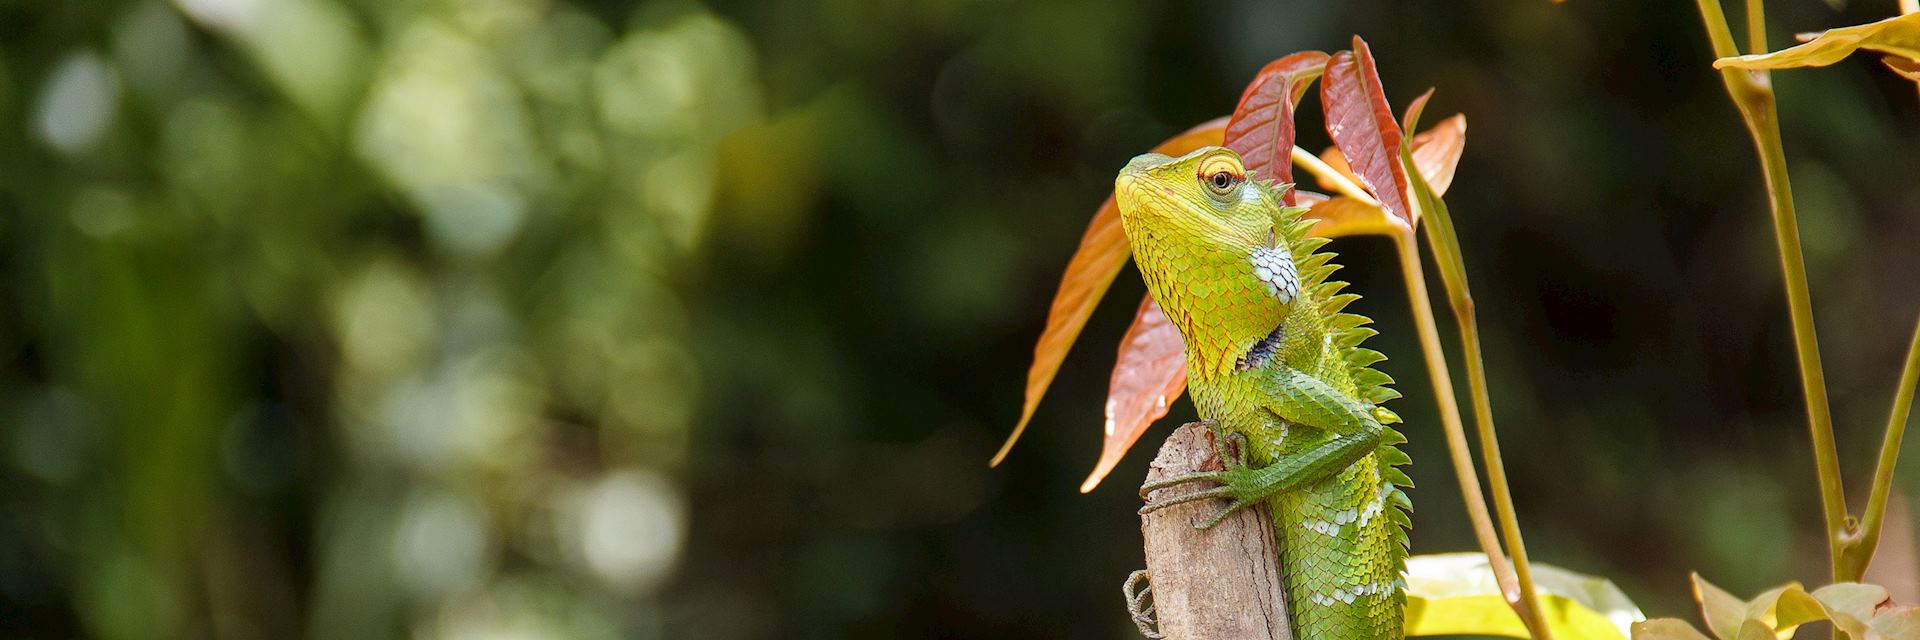 Green lizard, Sinharaja Biosphere Reserve